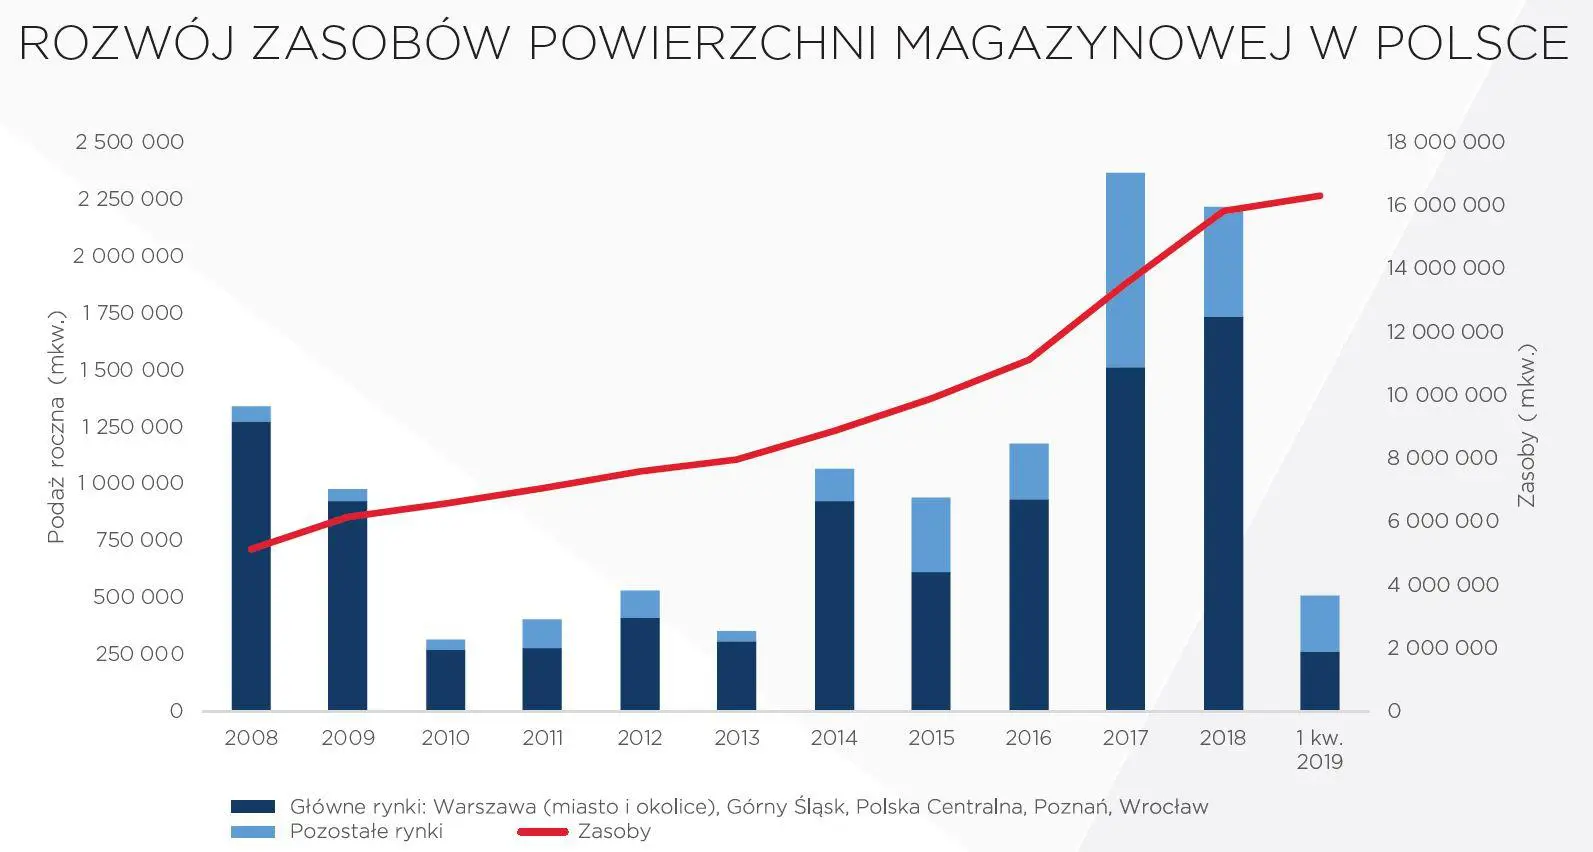 Rozwój zasobów powierzchni magazynowej w Polsce